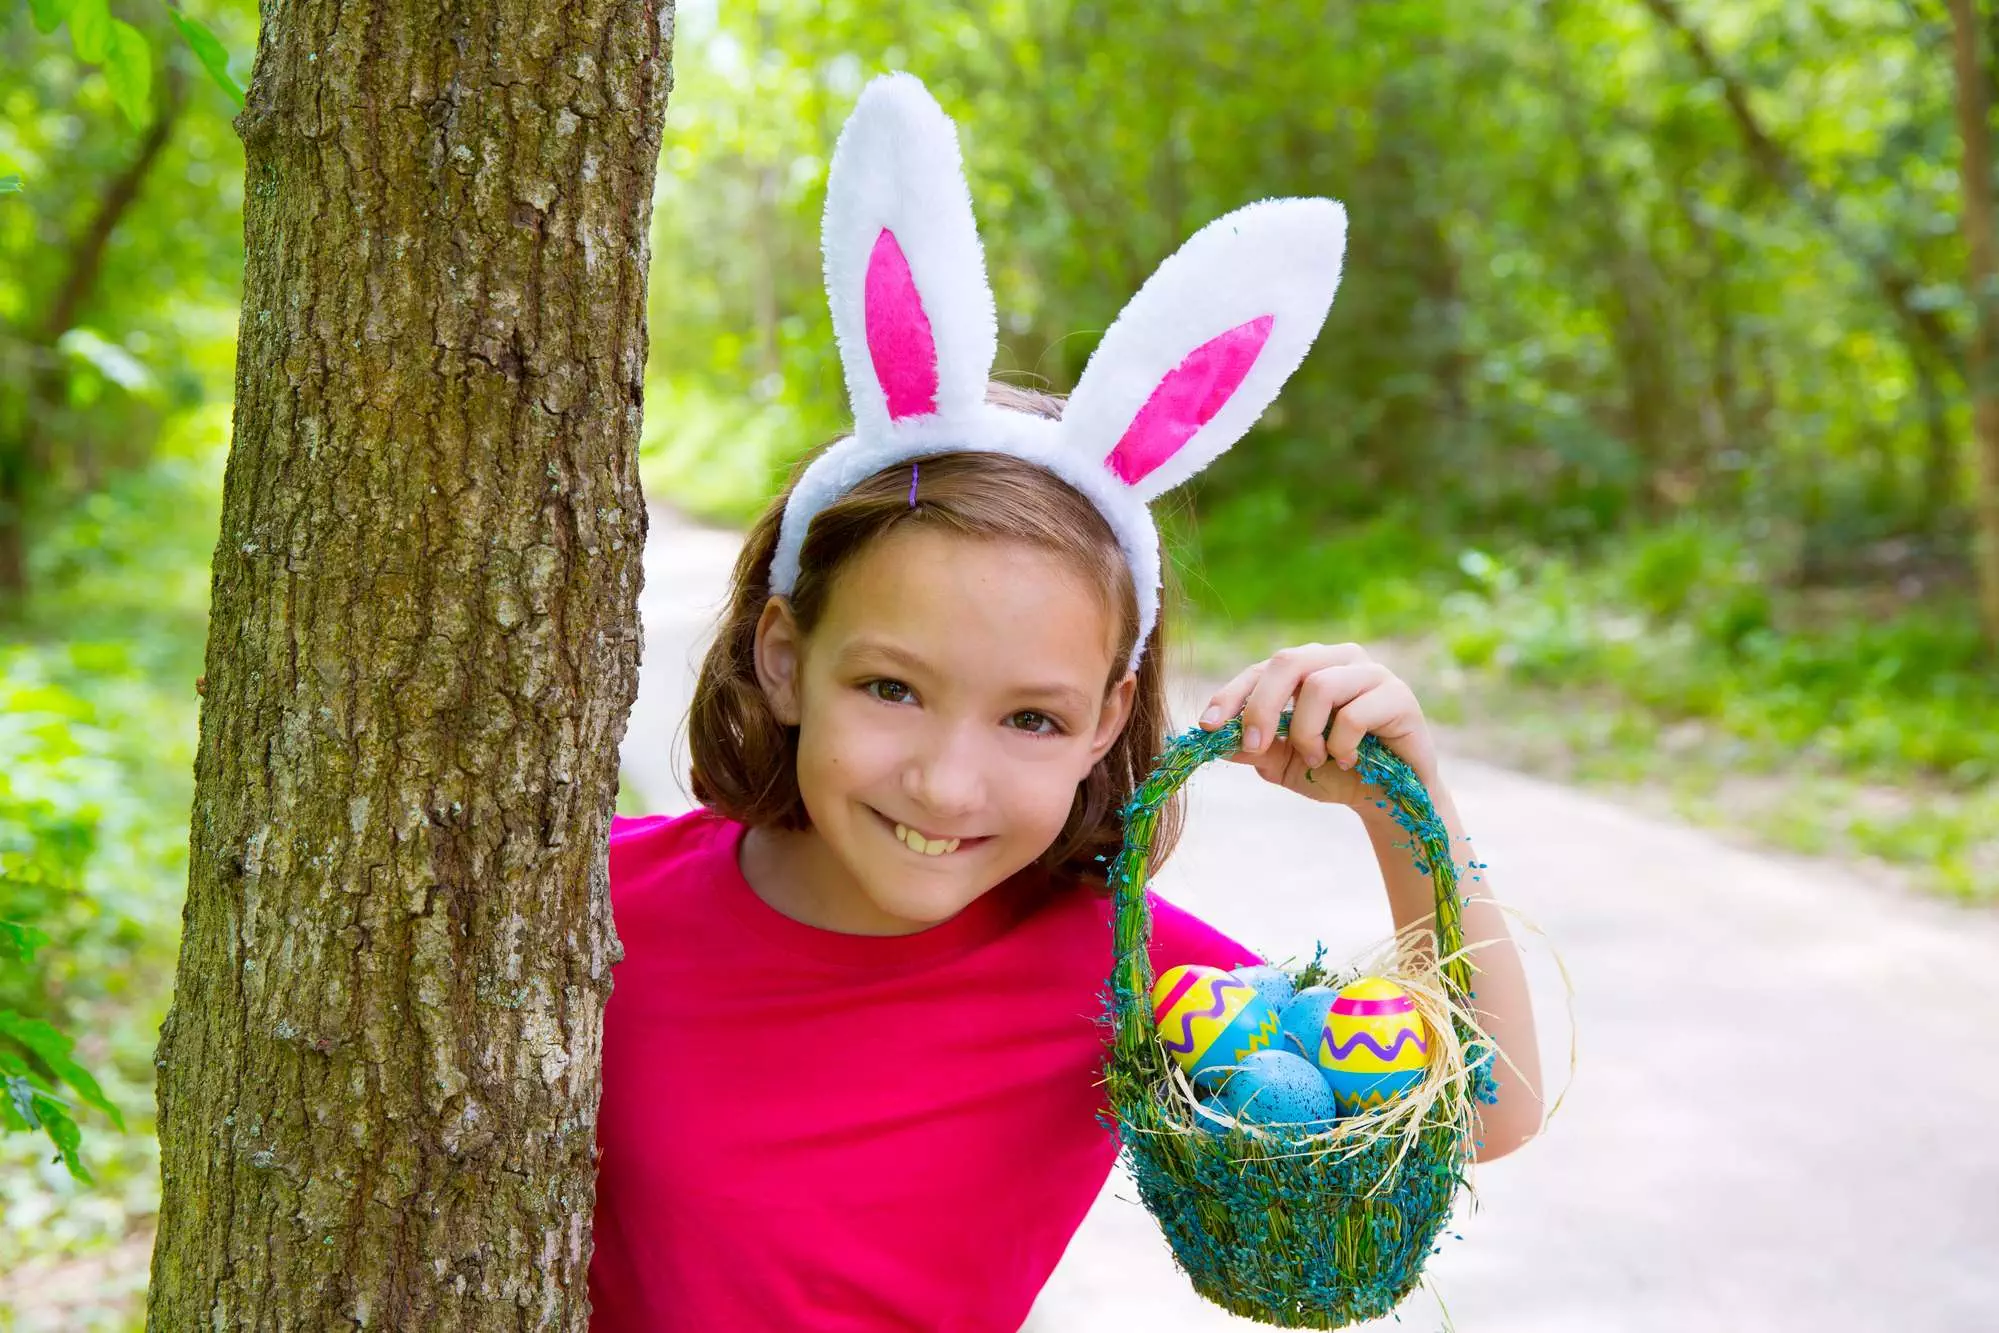 Easter basket ideas for girls